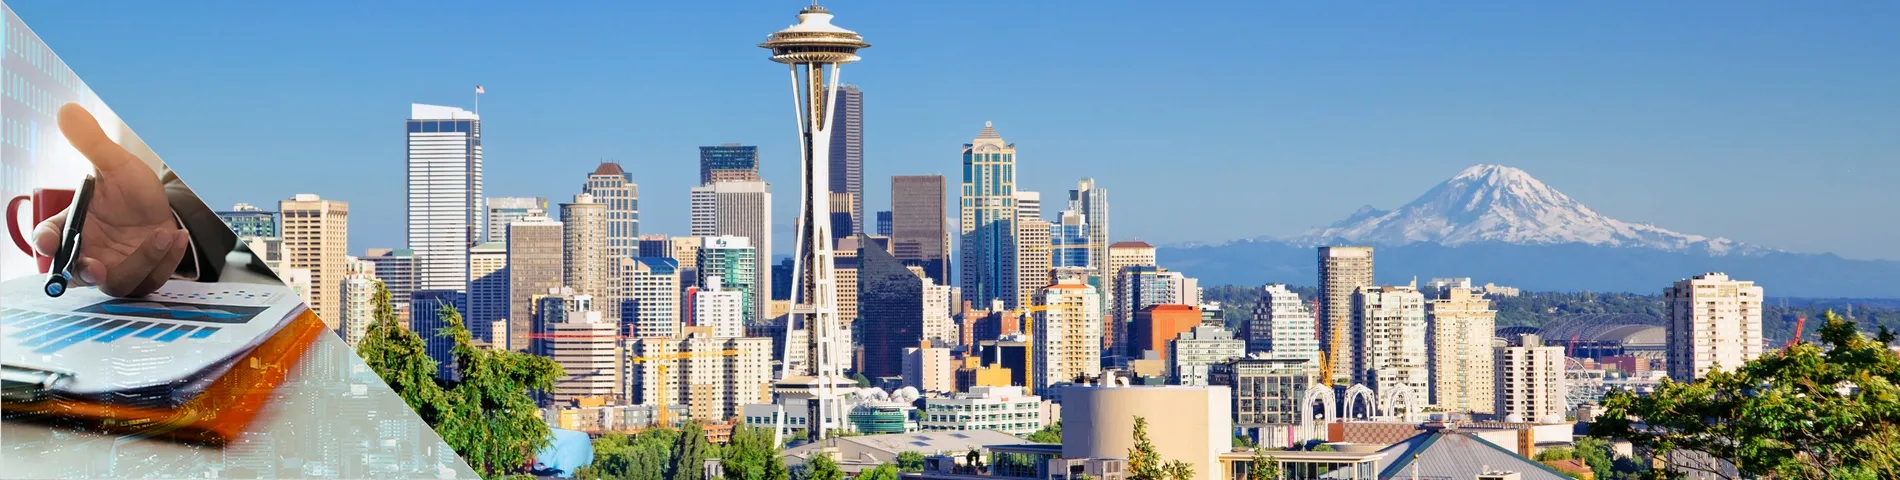 Seattle - 